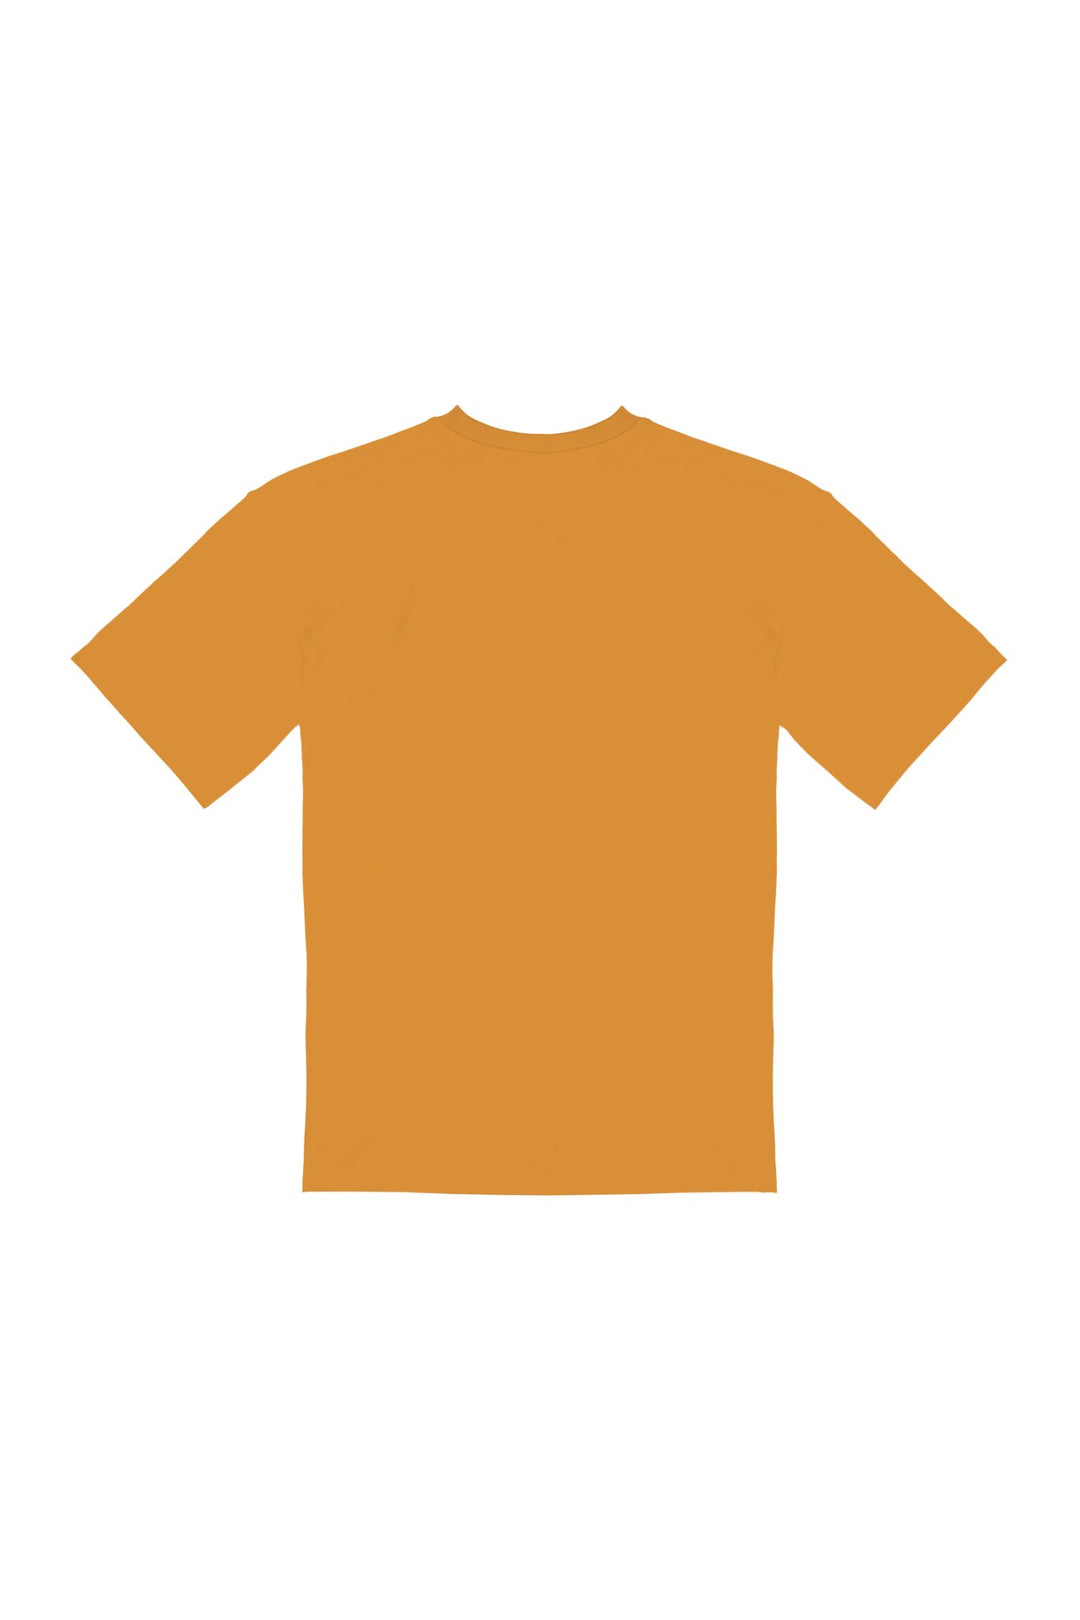 ROSAS・T - shirt unisexe・Orange - Le Cartel